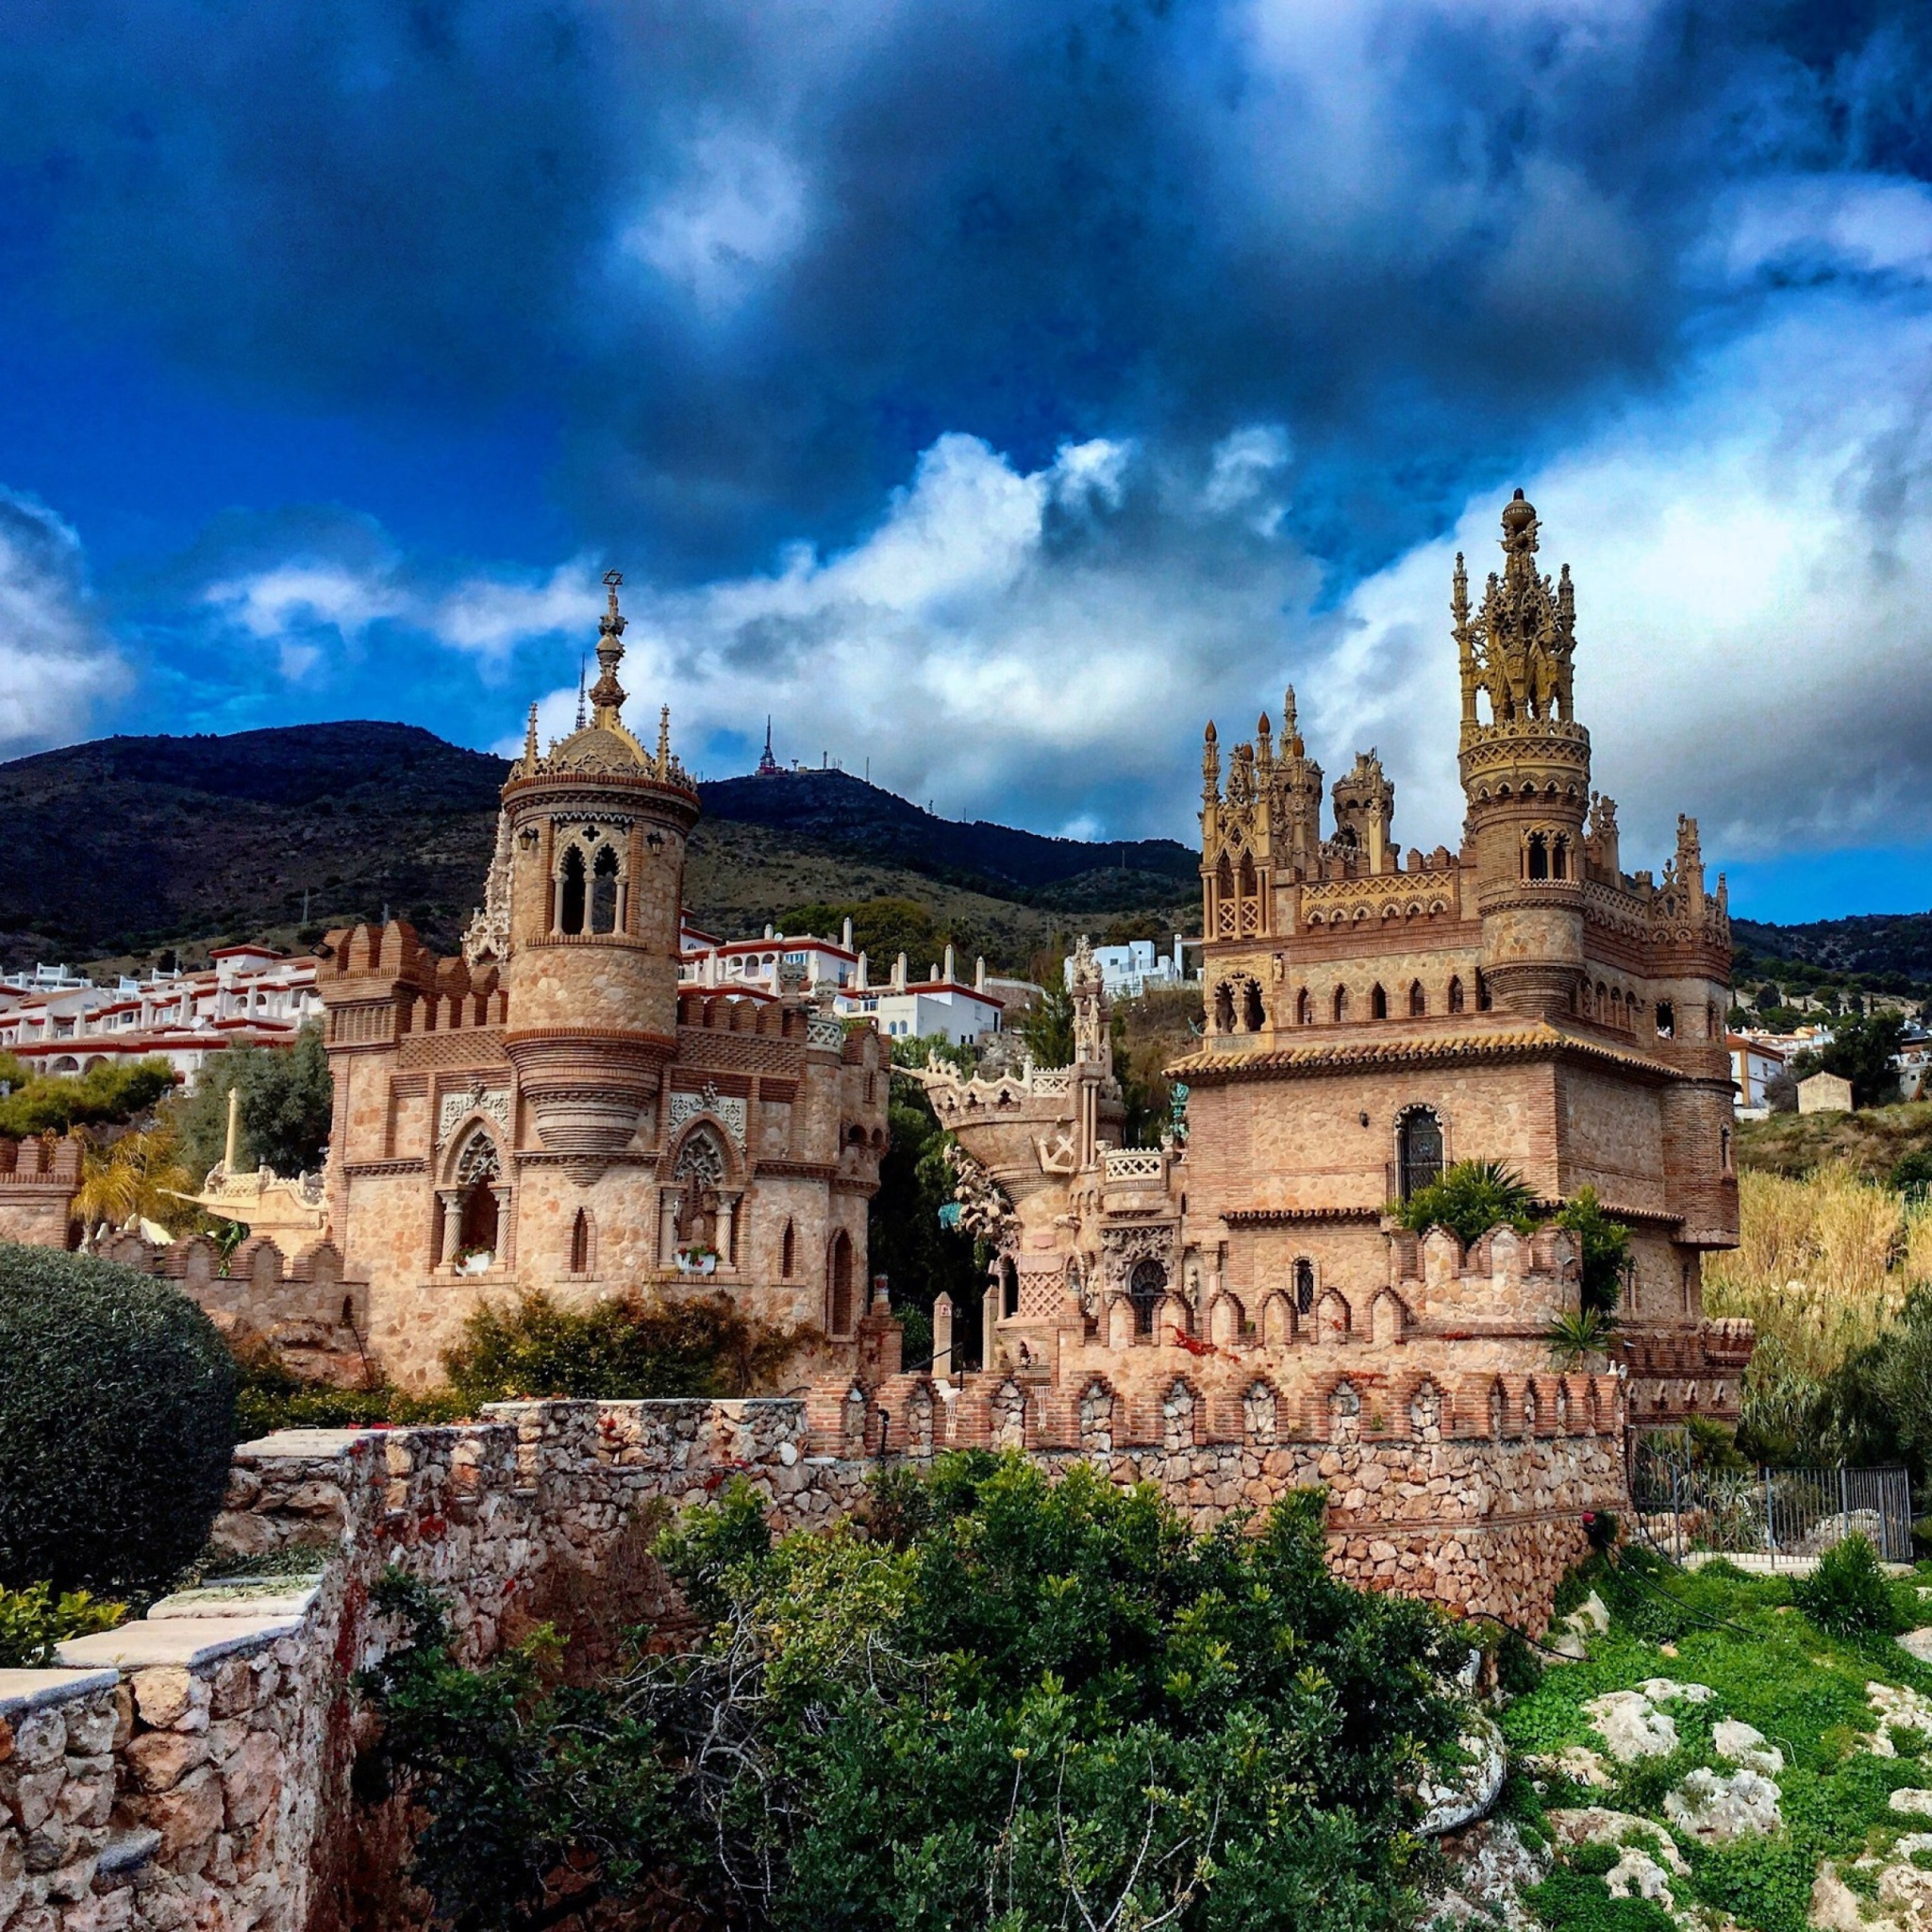 Das Castillo de Colomares in Spain Benalmadena Wallpaper 2048x2048